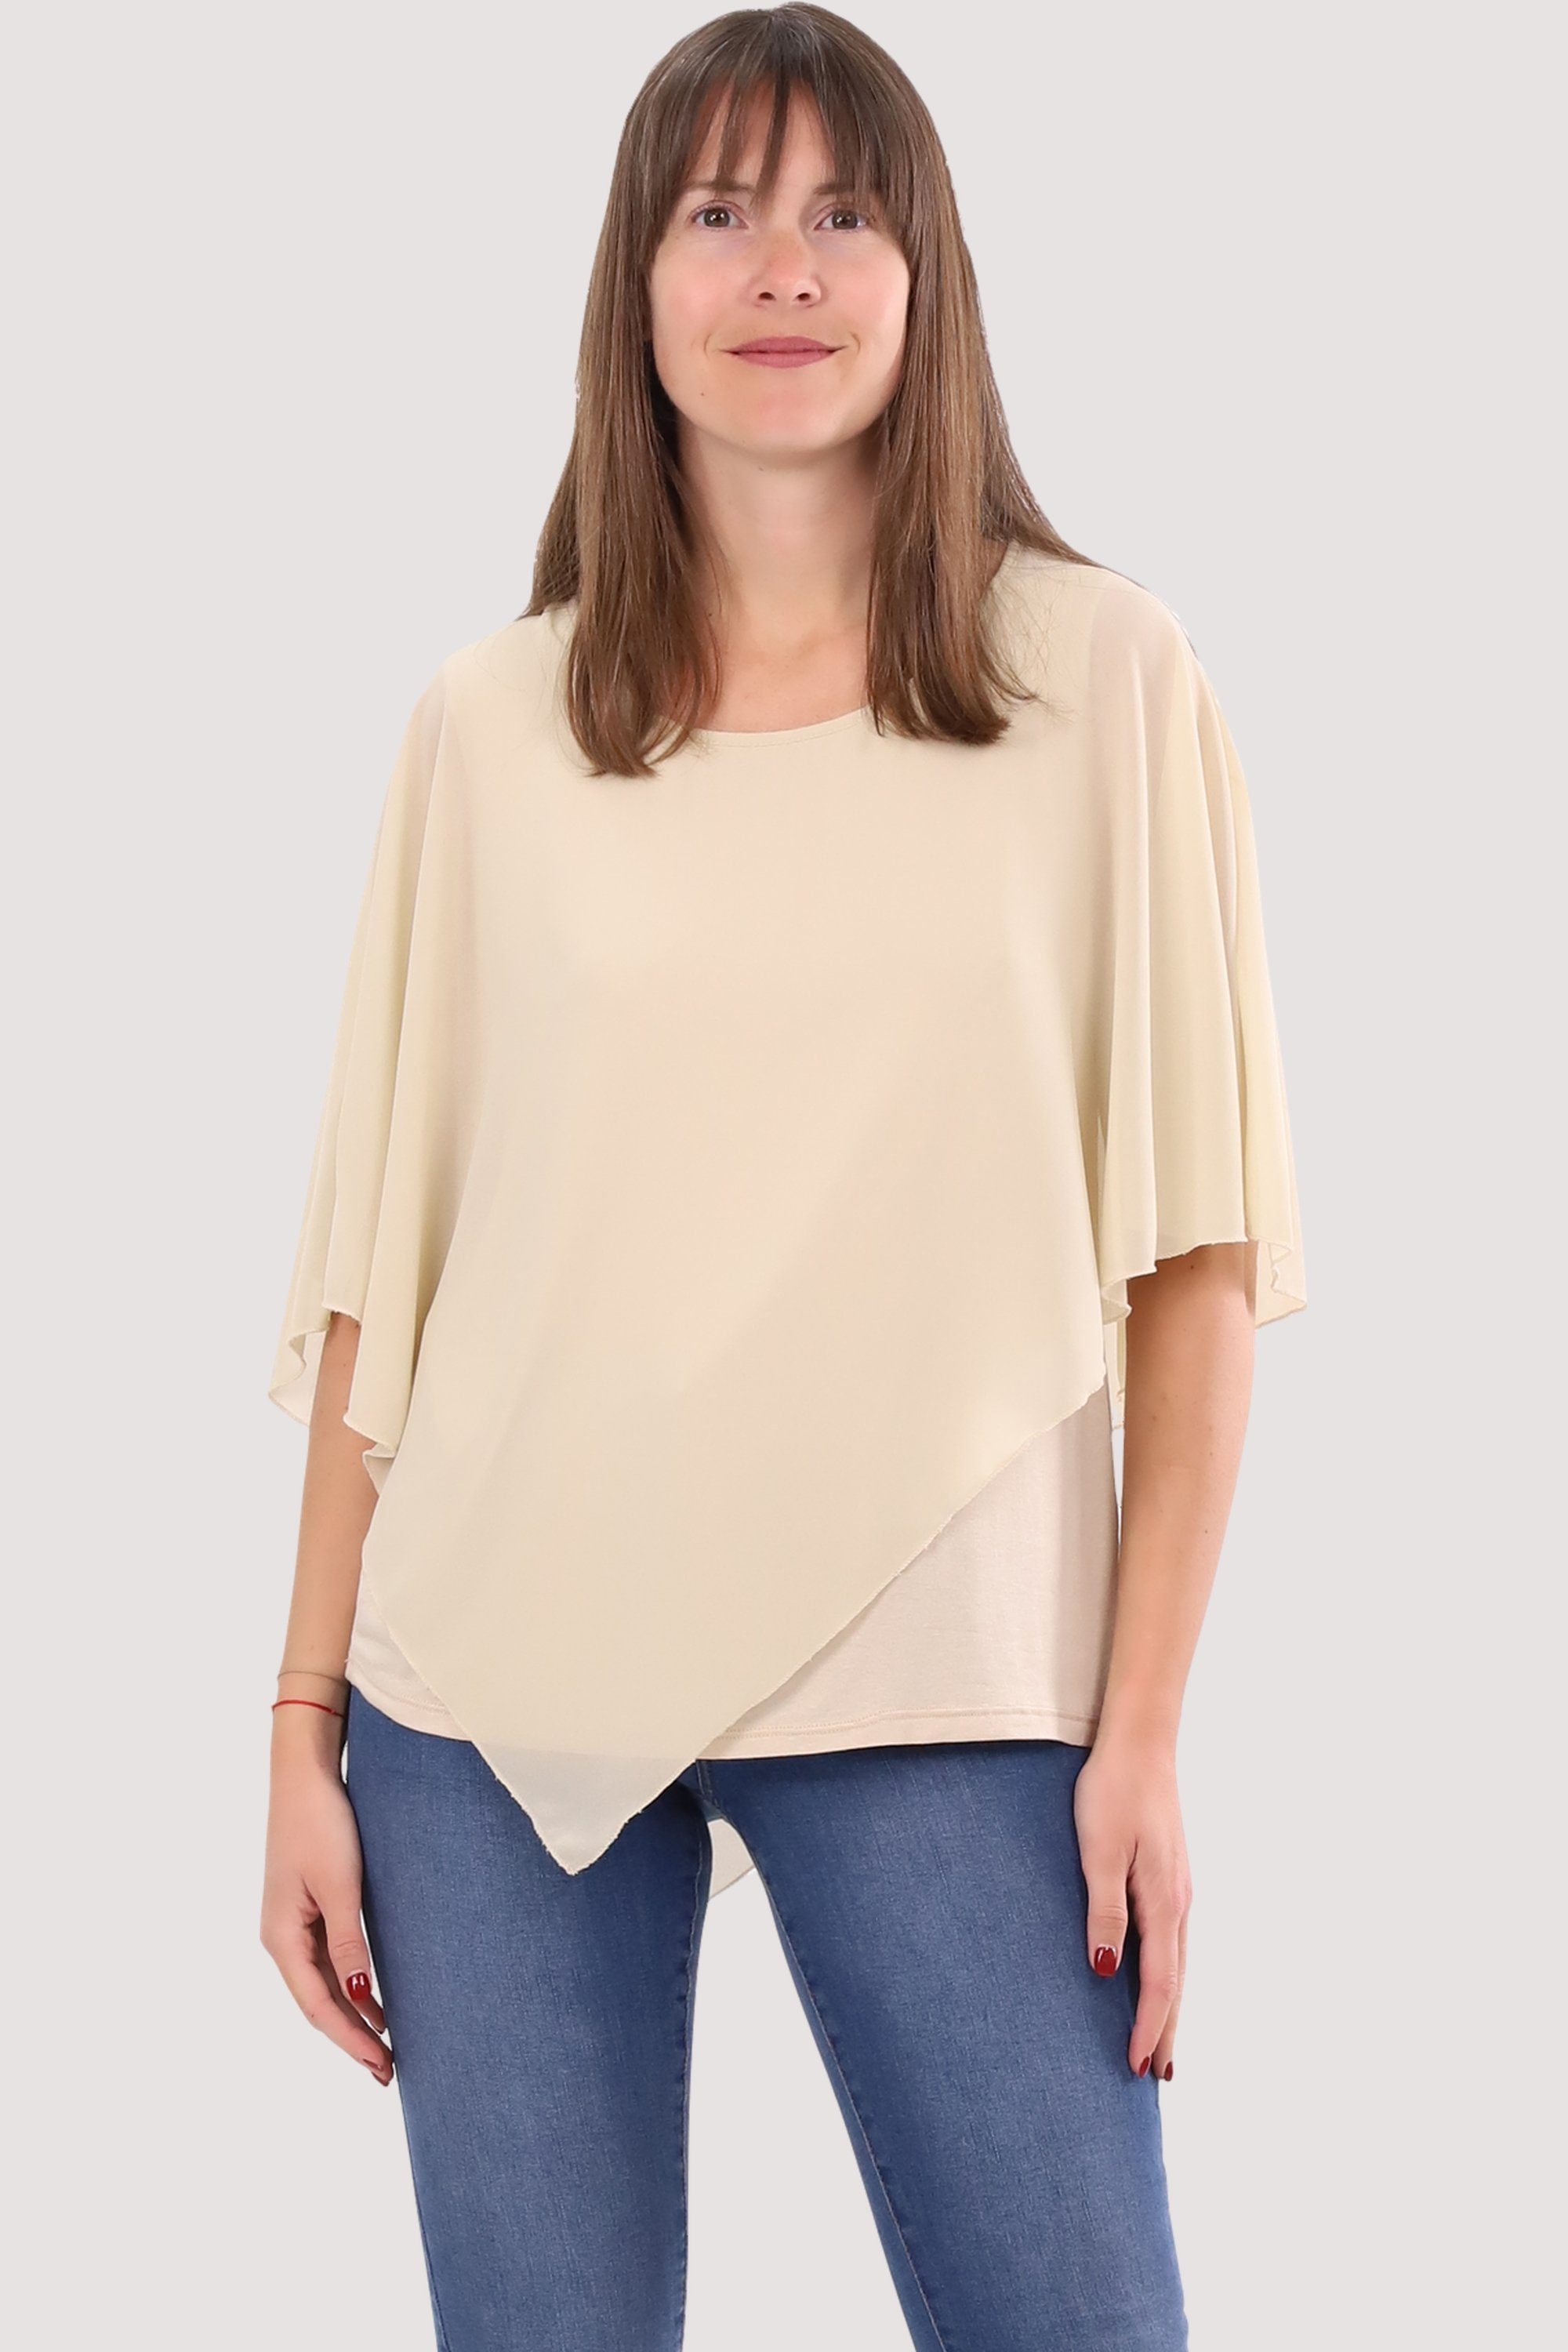 Braune Blusen für Damen online kaufen | OTTO | Blusen